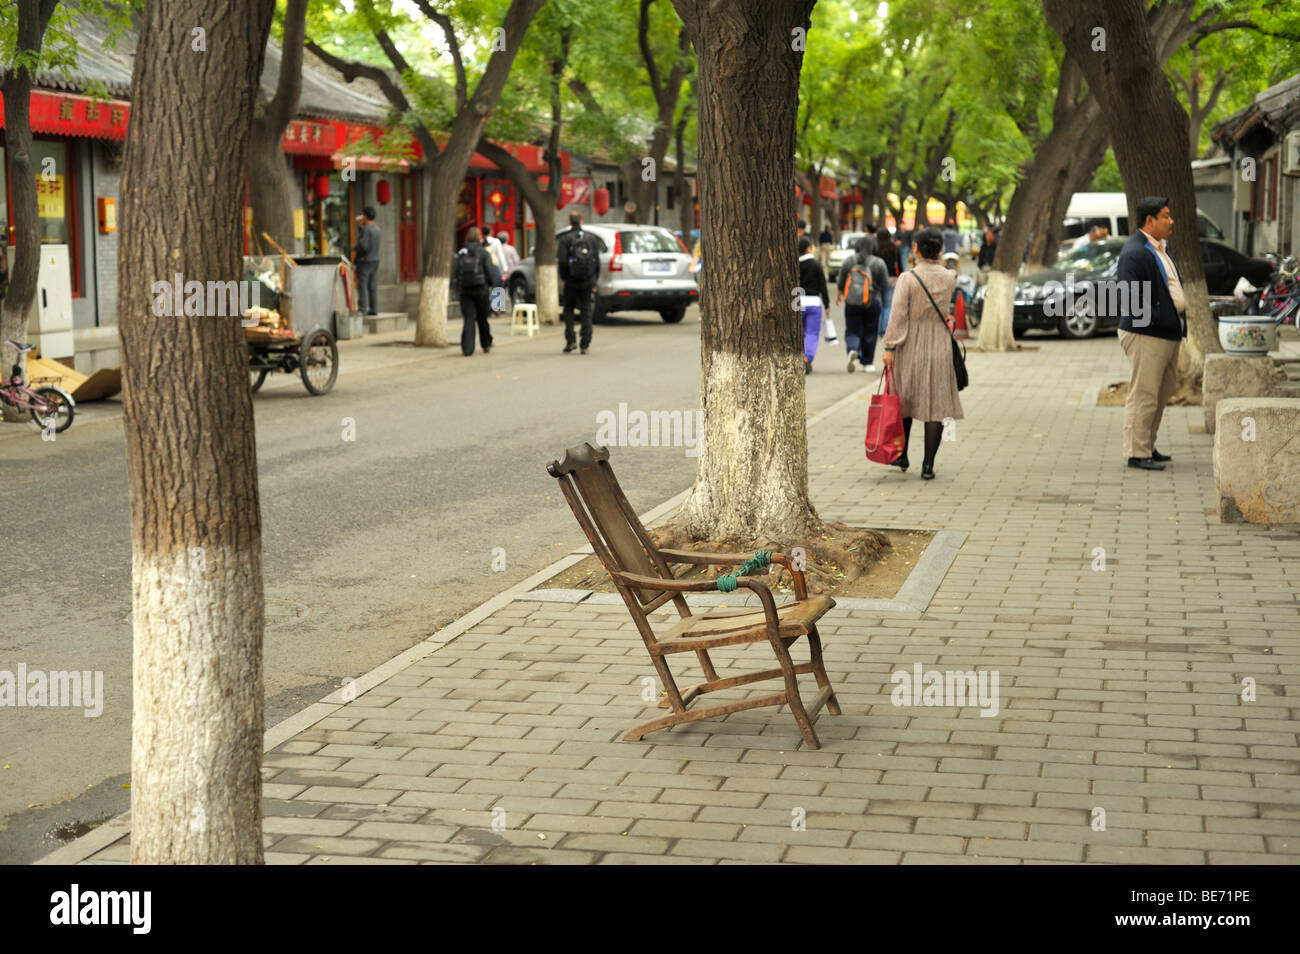 Una escena en la calle, cerca del Templo Lama Yong él Gong a Dongcheng Hutong Foto de stock